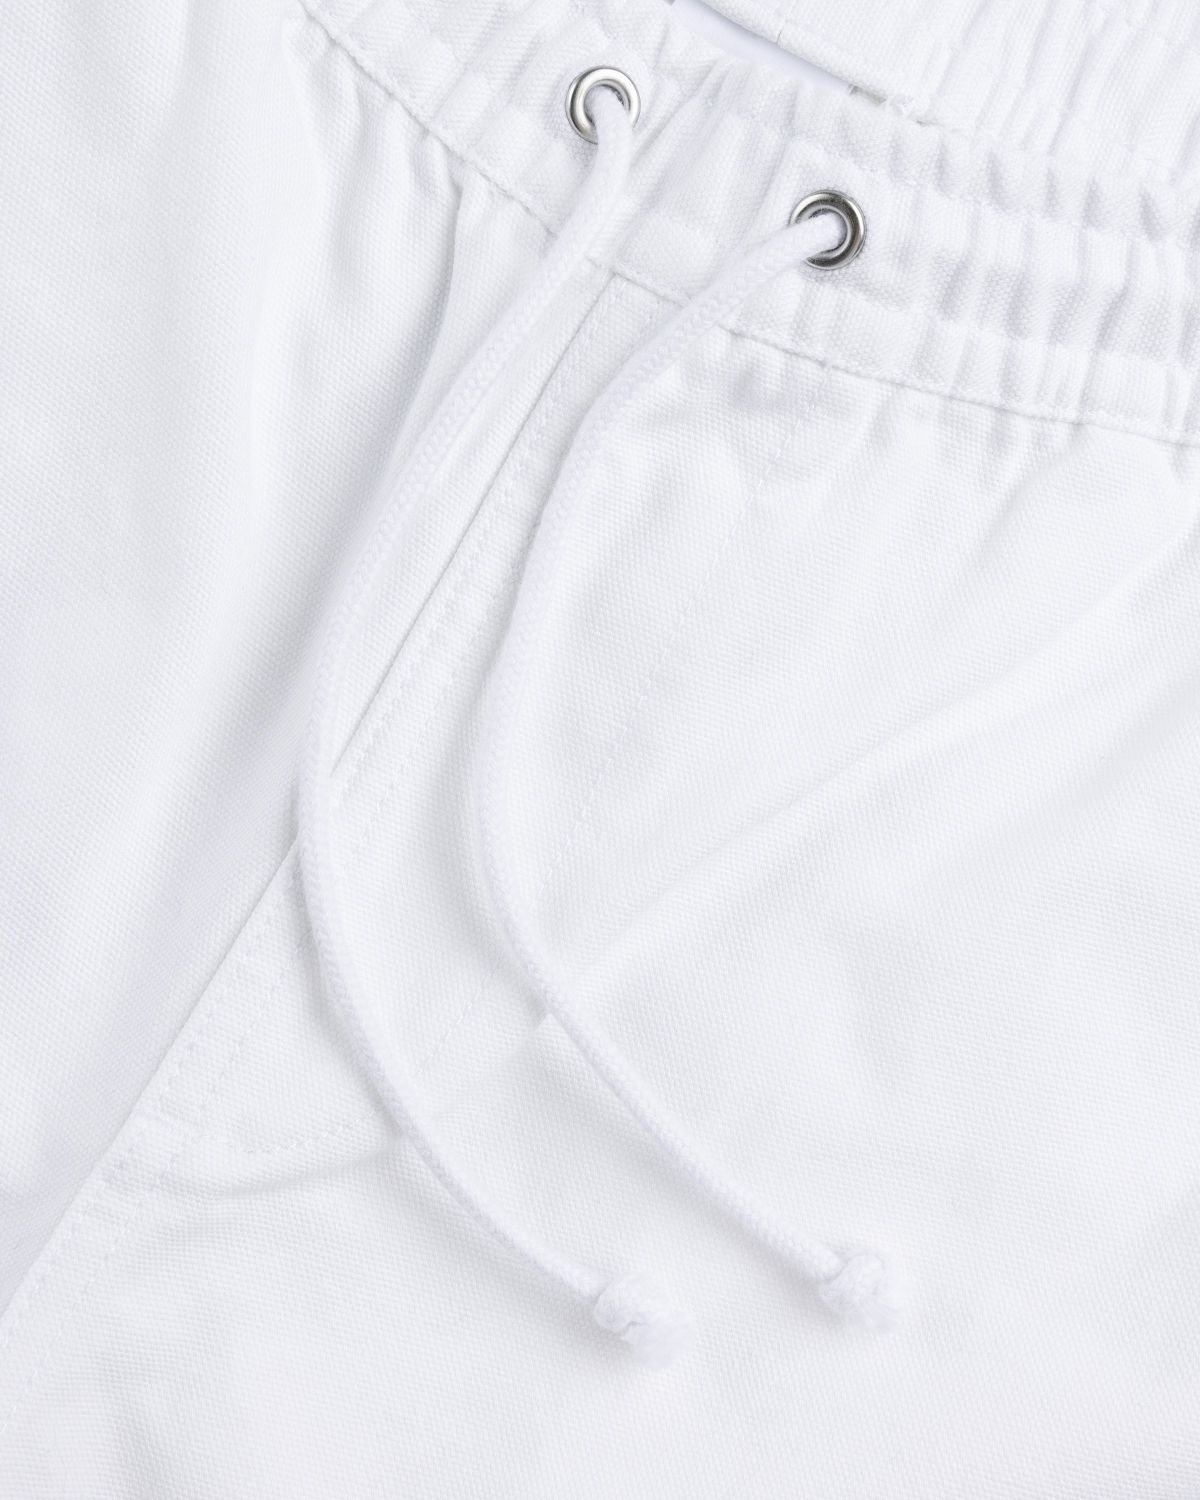 Puma – Shorts White - 5